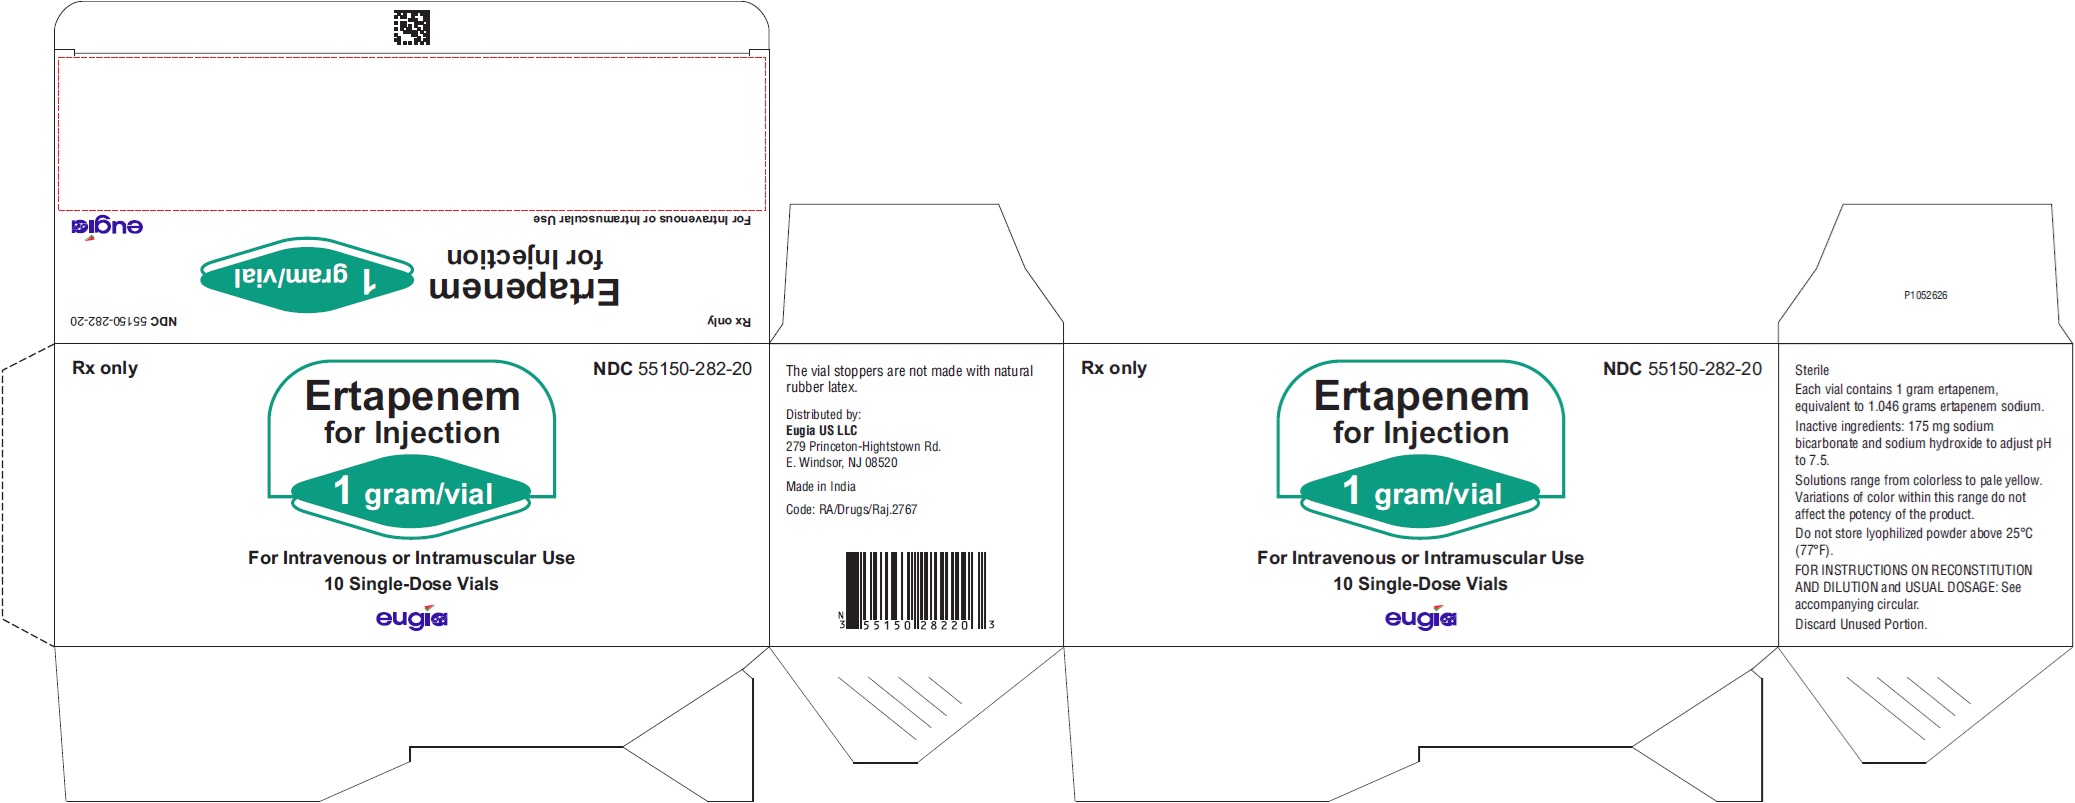 PACKAGE LABEL-PRINCIPAL DISPLAY PANEL - 1 gram/vial - Container-Carton (10 Vials)